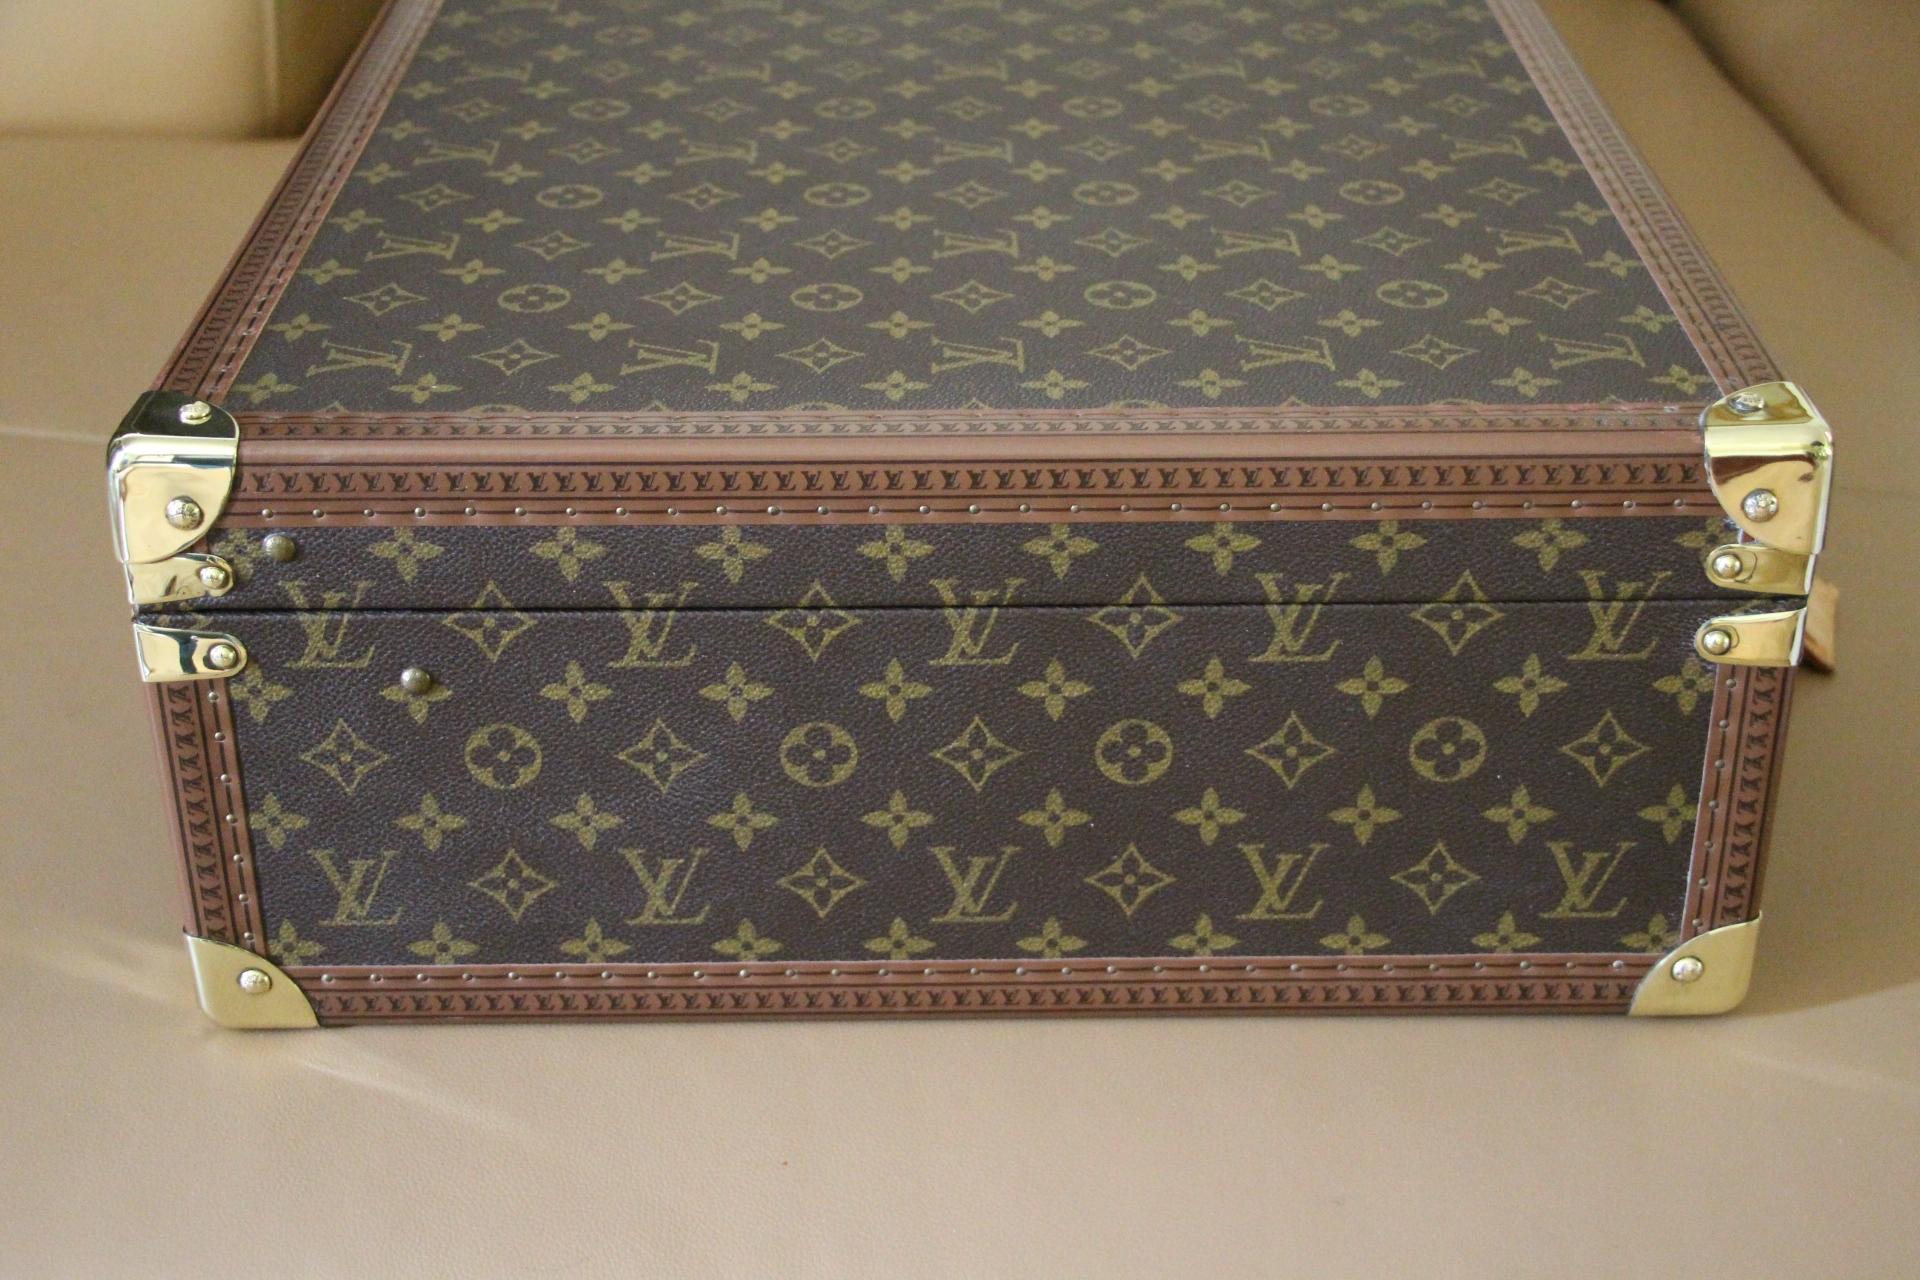  Louis Vuitton Suitcase 60 cm,  Louis Vuitton Trunk, Vuitton 60 Suitcase 5